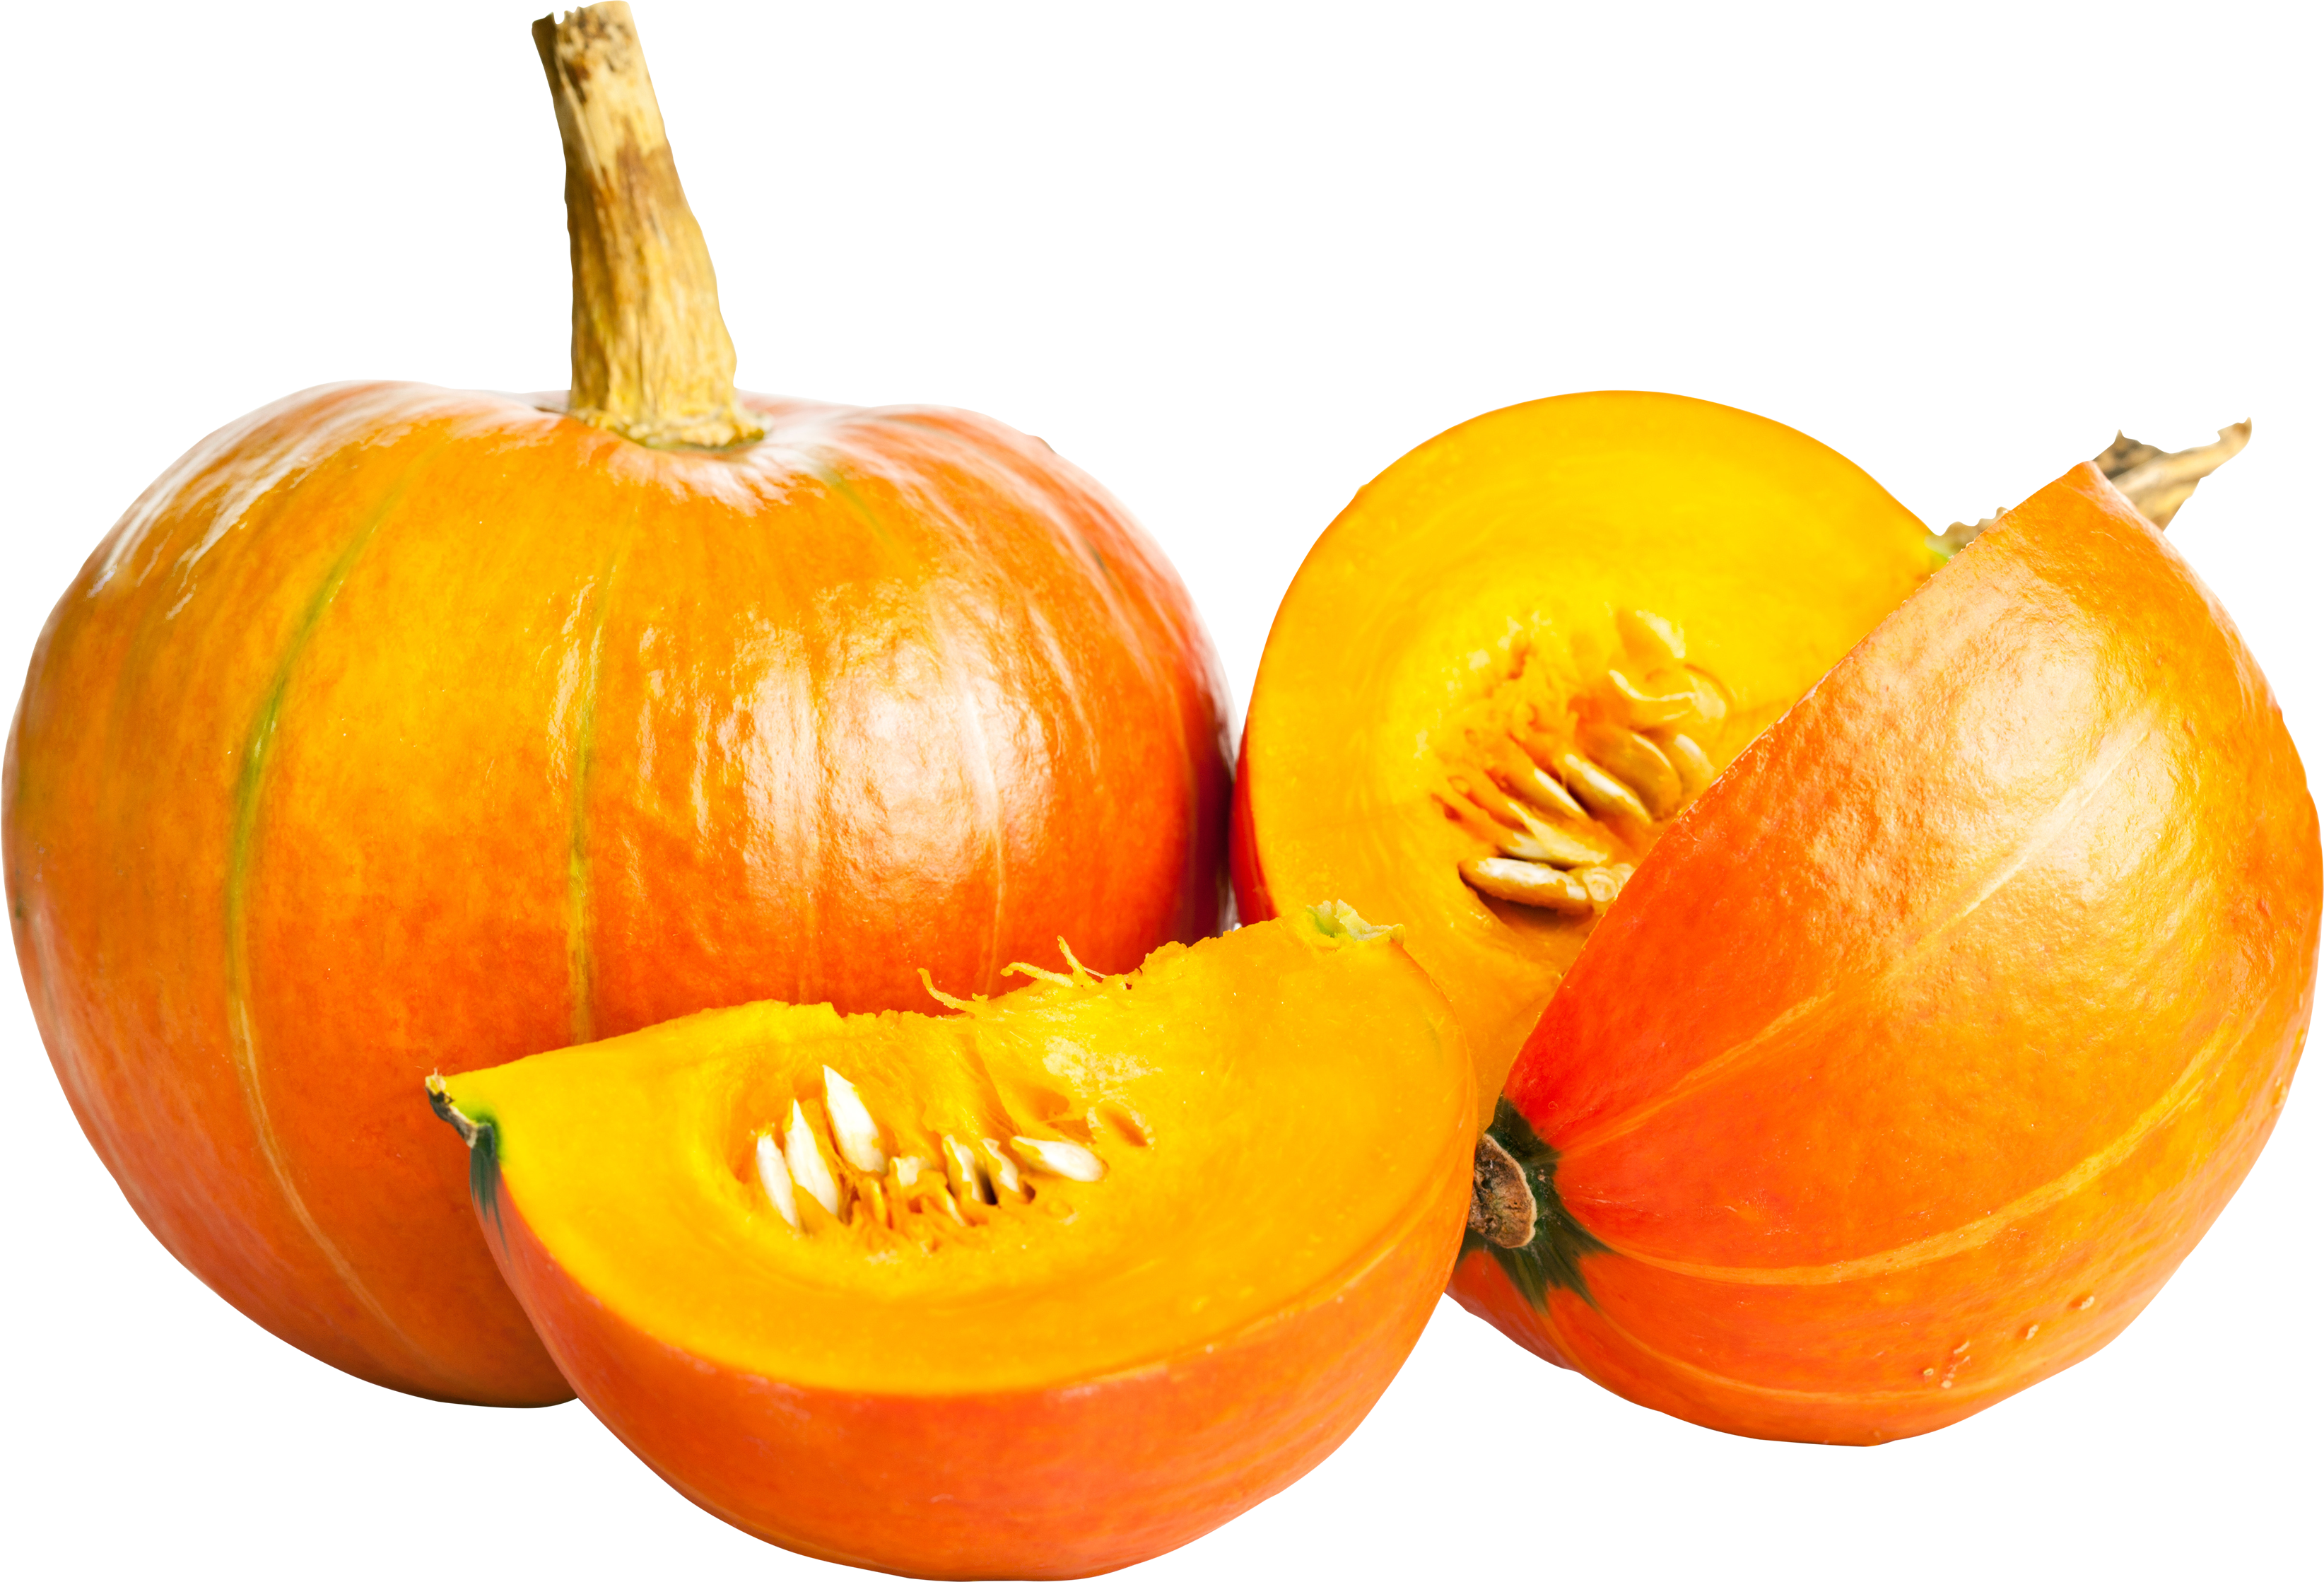 Pumpkin PNG Clip Art Image